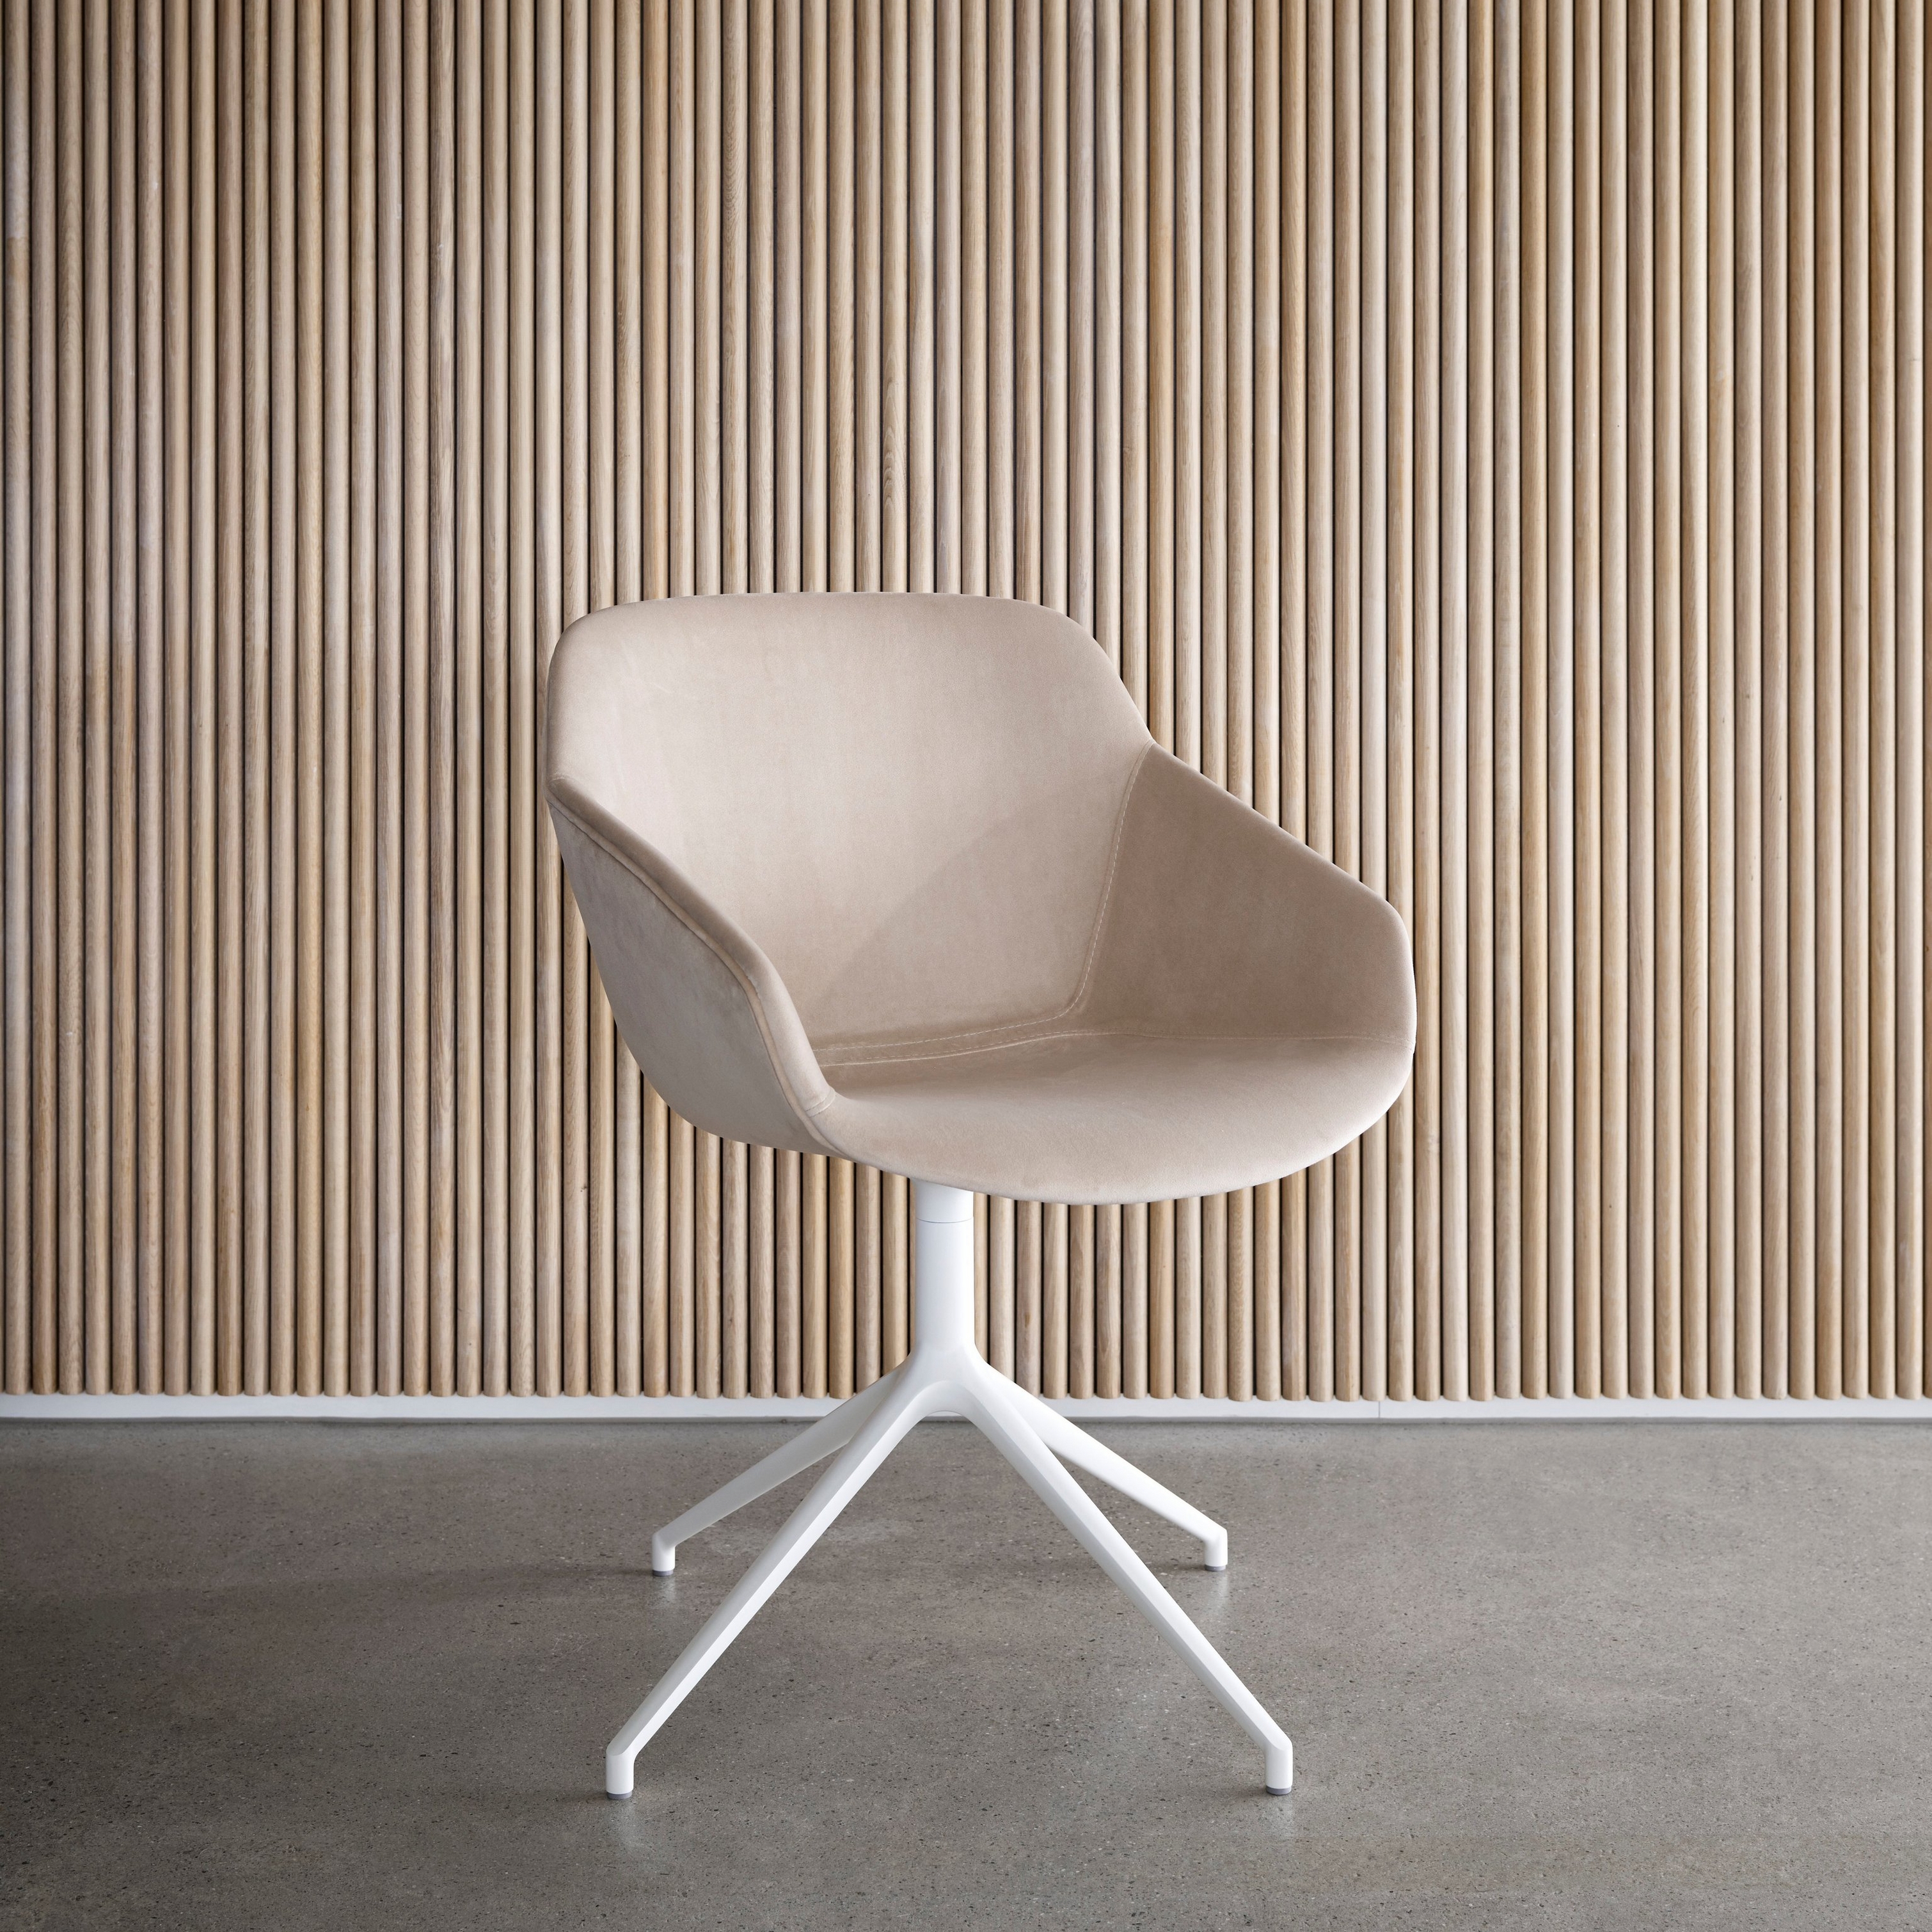 Beige stoel met witte voet tegen een verticale houten lamellenwand.